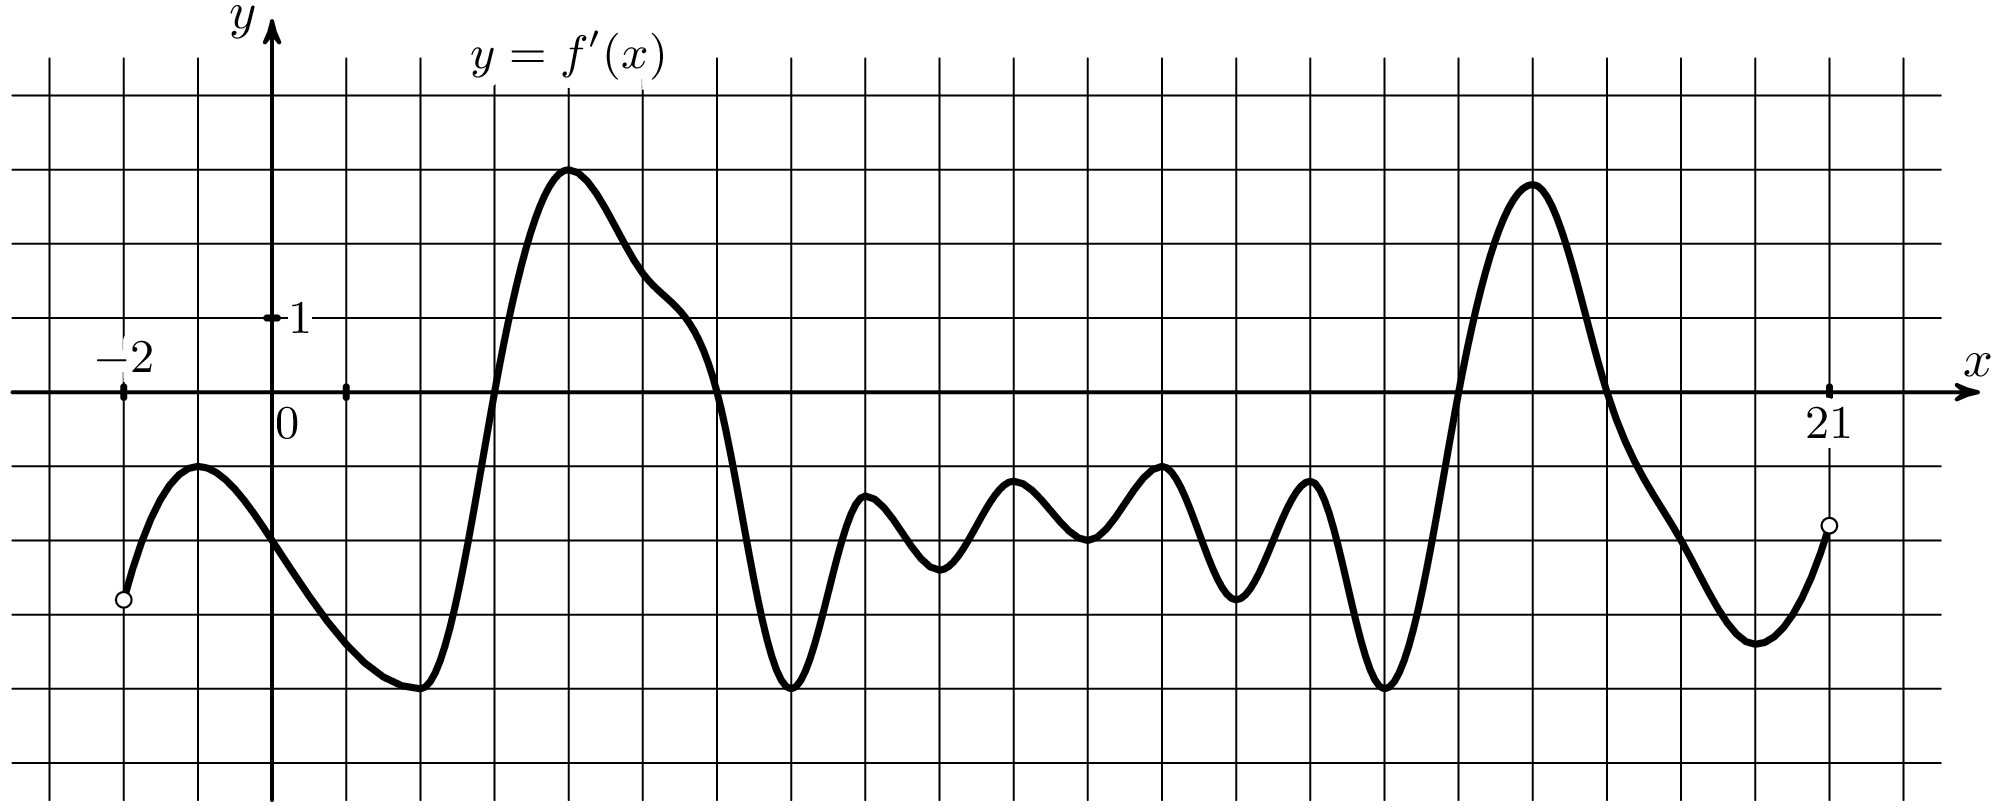 Функция y f ax. На рисунке изображён график y f' x производной функции f x. Функция y=FX. График y = f '(x) — производной функции f(x). Найдите количество точек минимума.